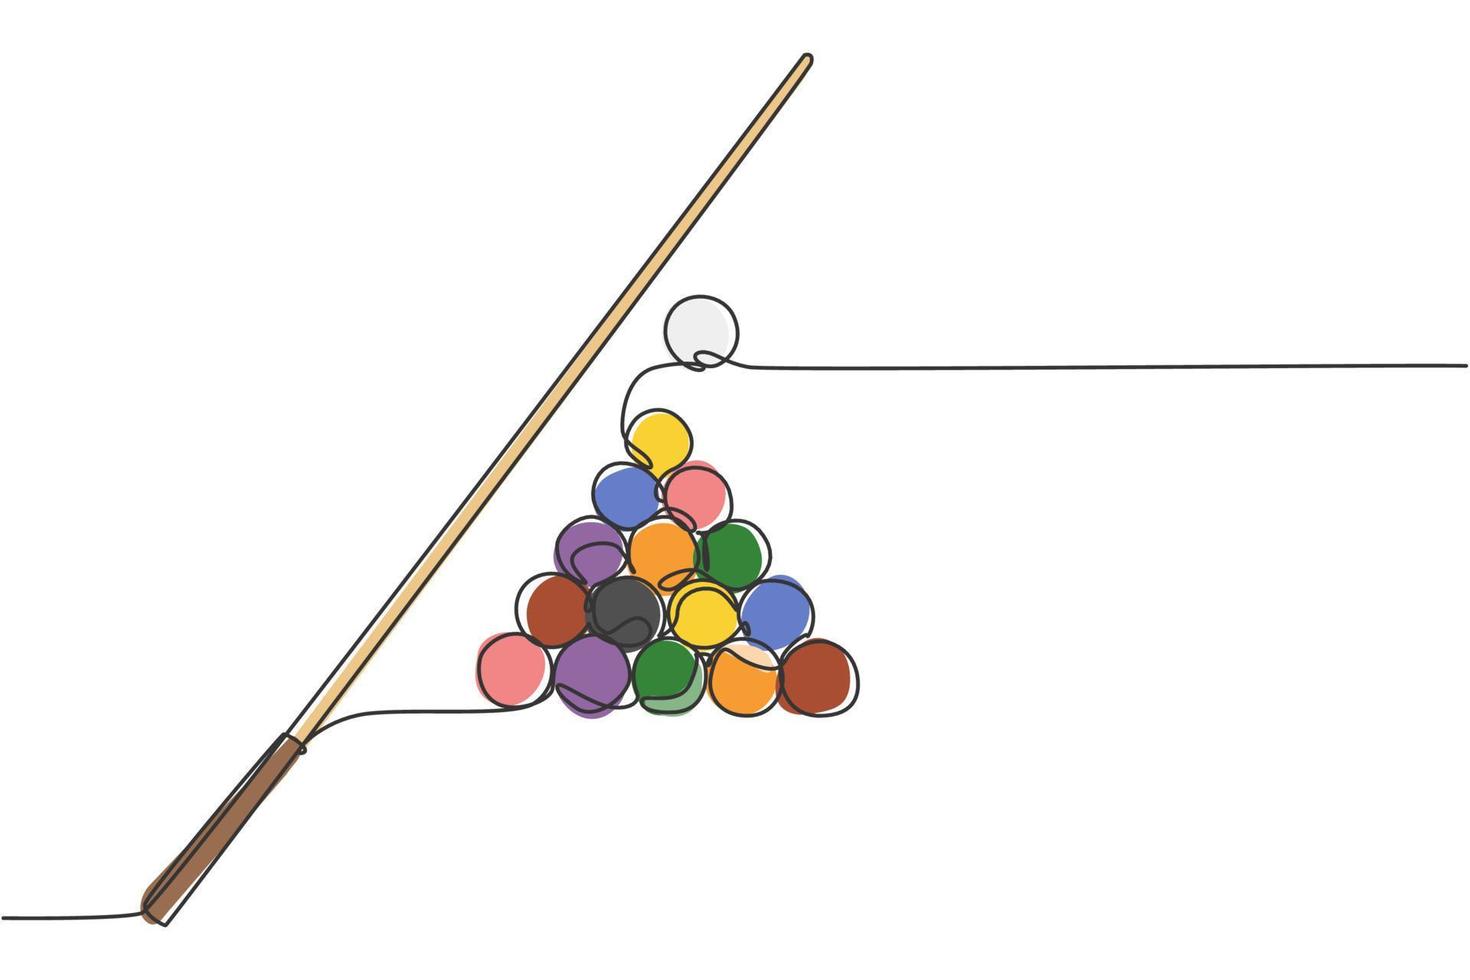 einzelne durchgehende Linienzeichnung von dreieckigen Pyramidenkugeln stapeln sich für Pool-Billard-Spiele im Billardraum. Indoor-Sport-Spielkonzept. trendige einzeilige zeichnen design-vektor-illustrationsgrafik vektor